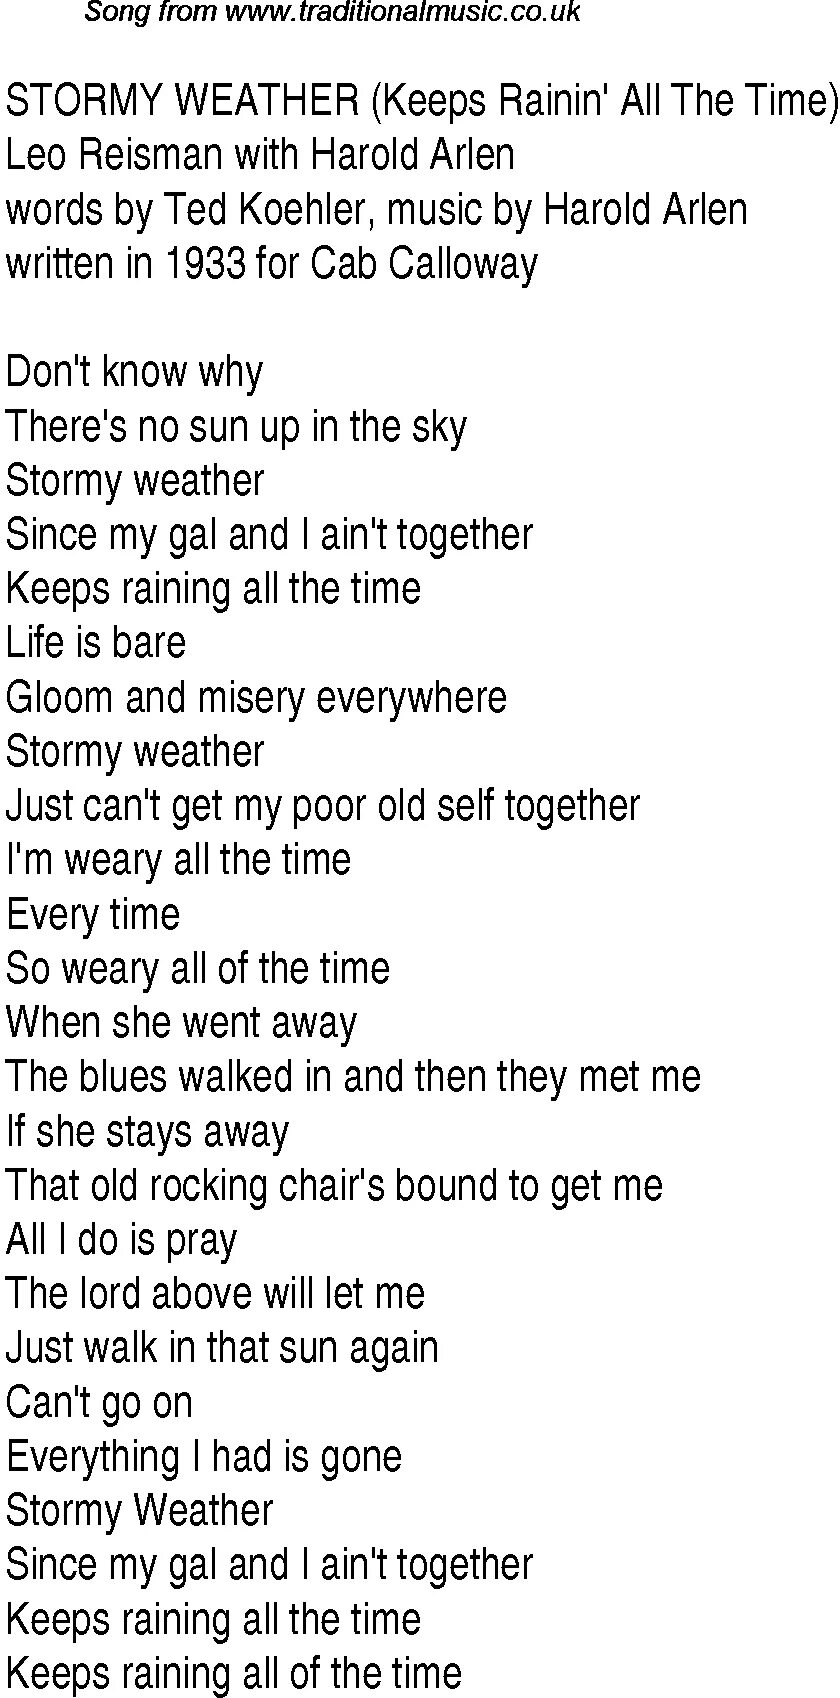 Главней всего погода текст. Stormy weather текст. Шадоурейз текст. Песня Stormy weather. Песня weather Song текст.